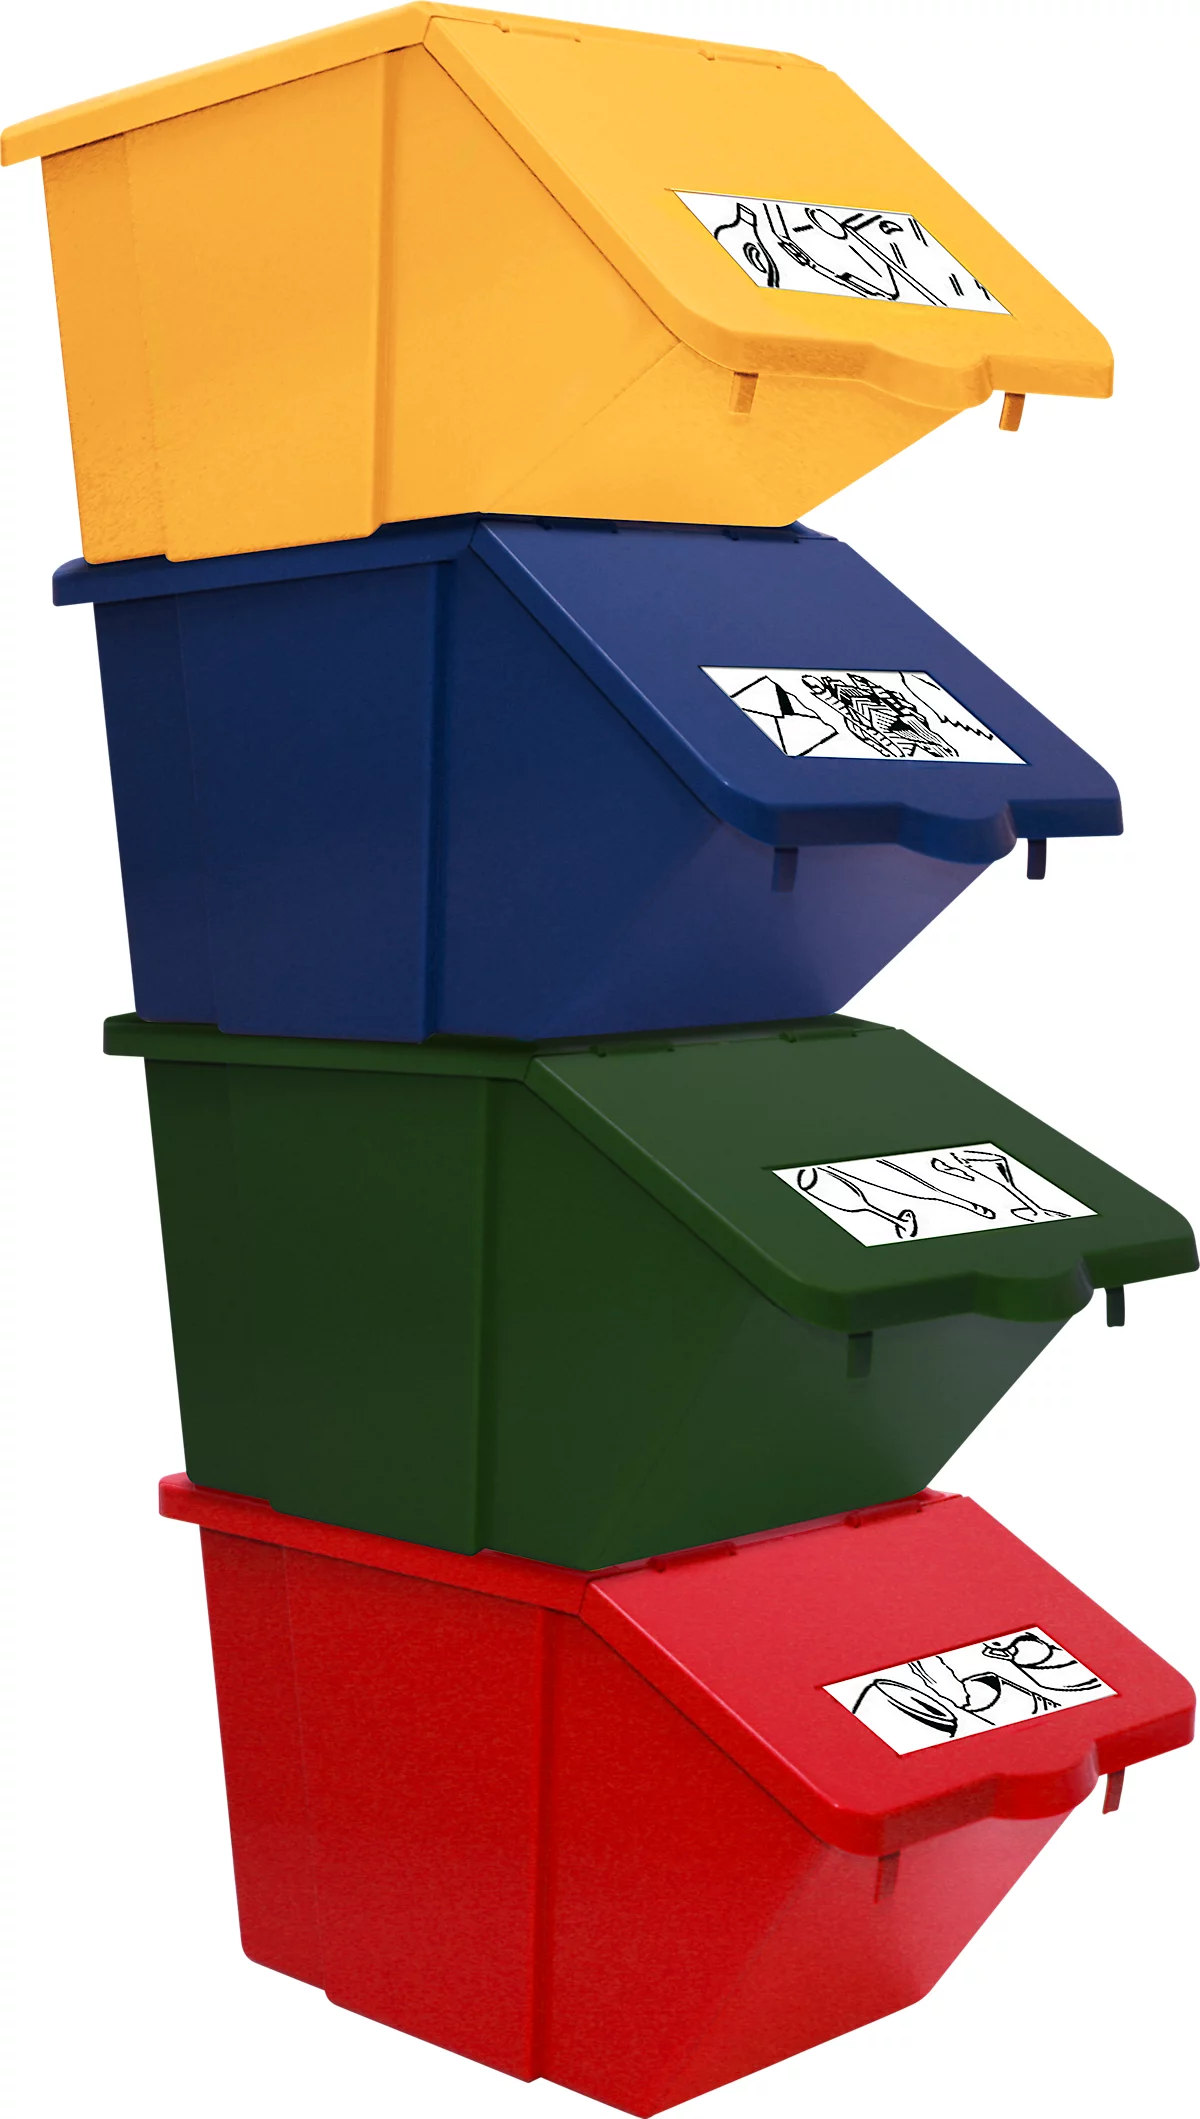 Recogedor de residuos reciclables Ökonom, 45 l, como juego de 4 o individualmente, apilable, L 550 x A 310 x A 300 mm, varios colores. Colores